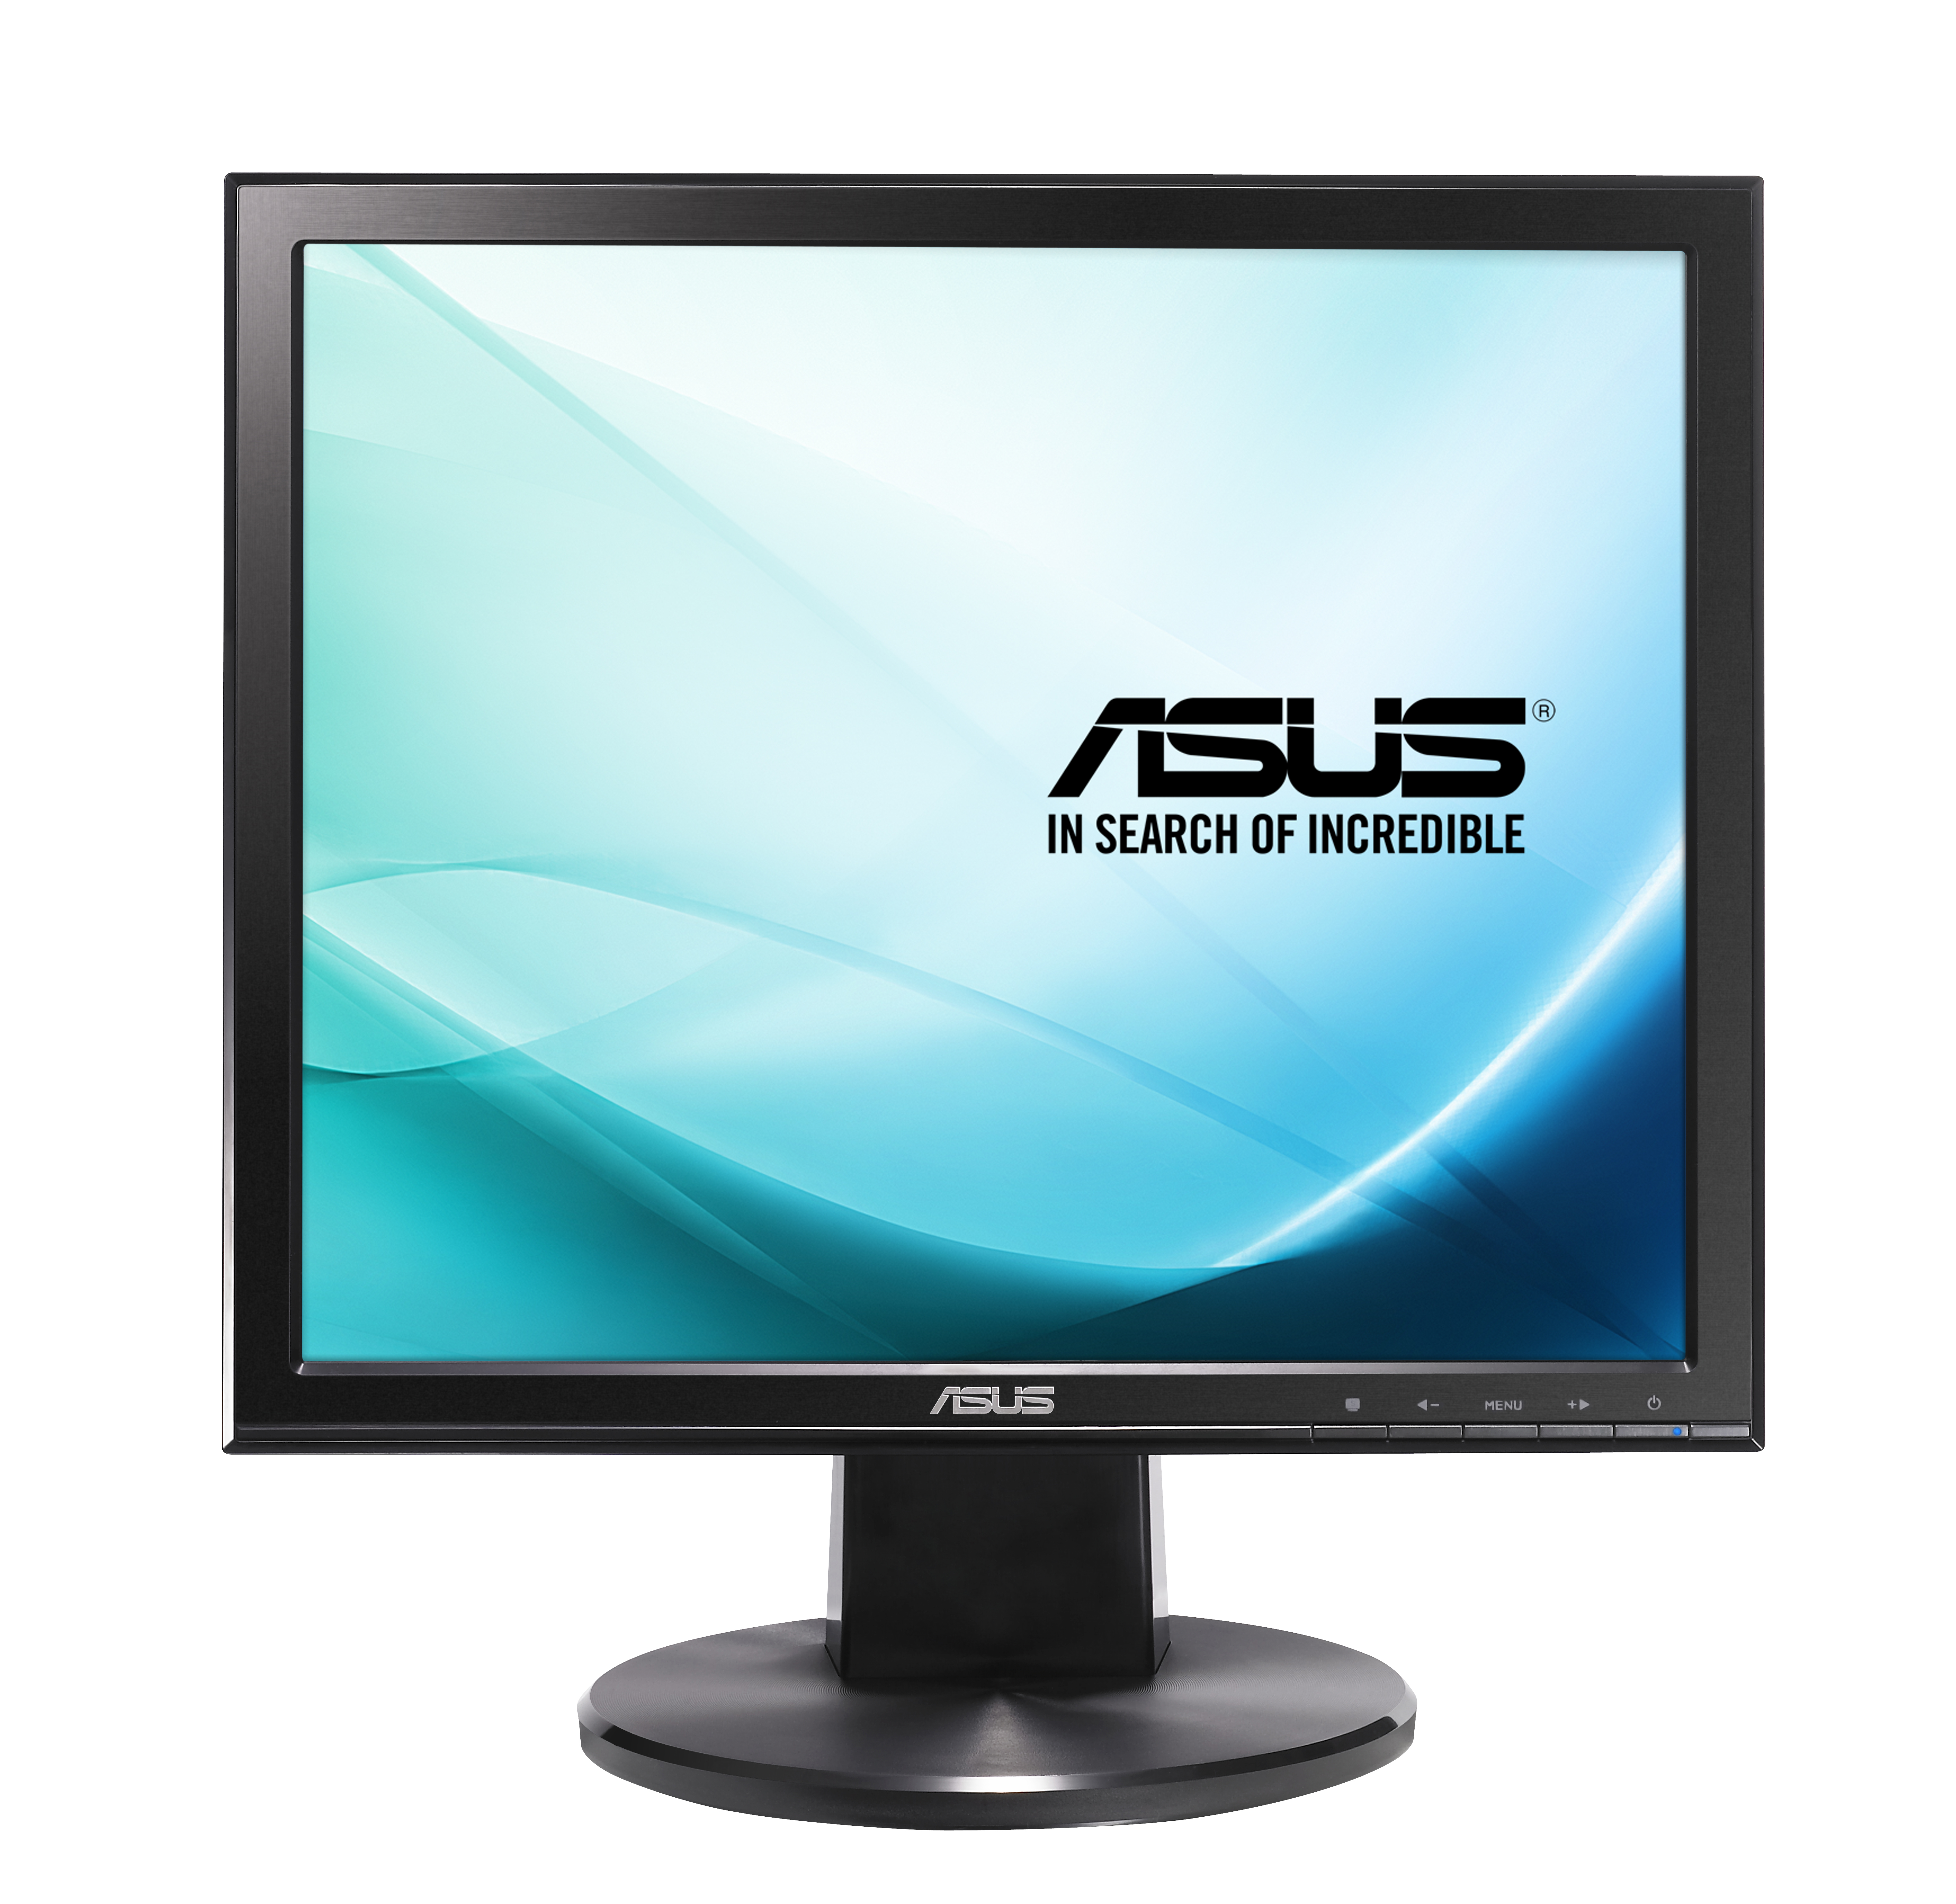 ASUS VB178N computer monitor